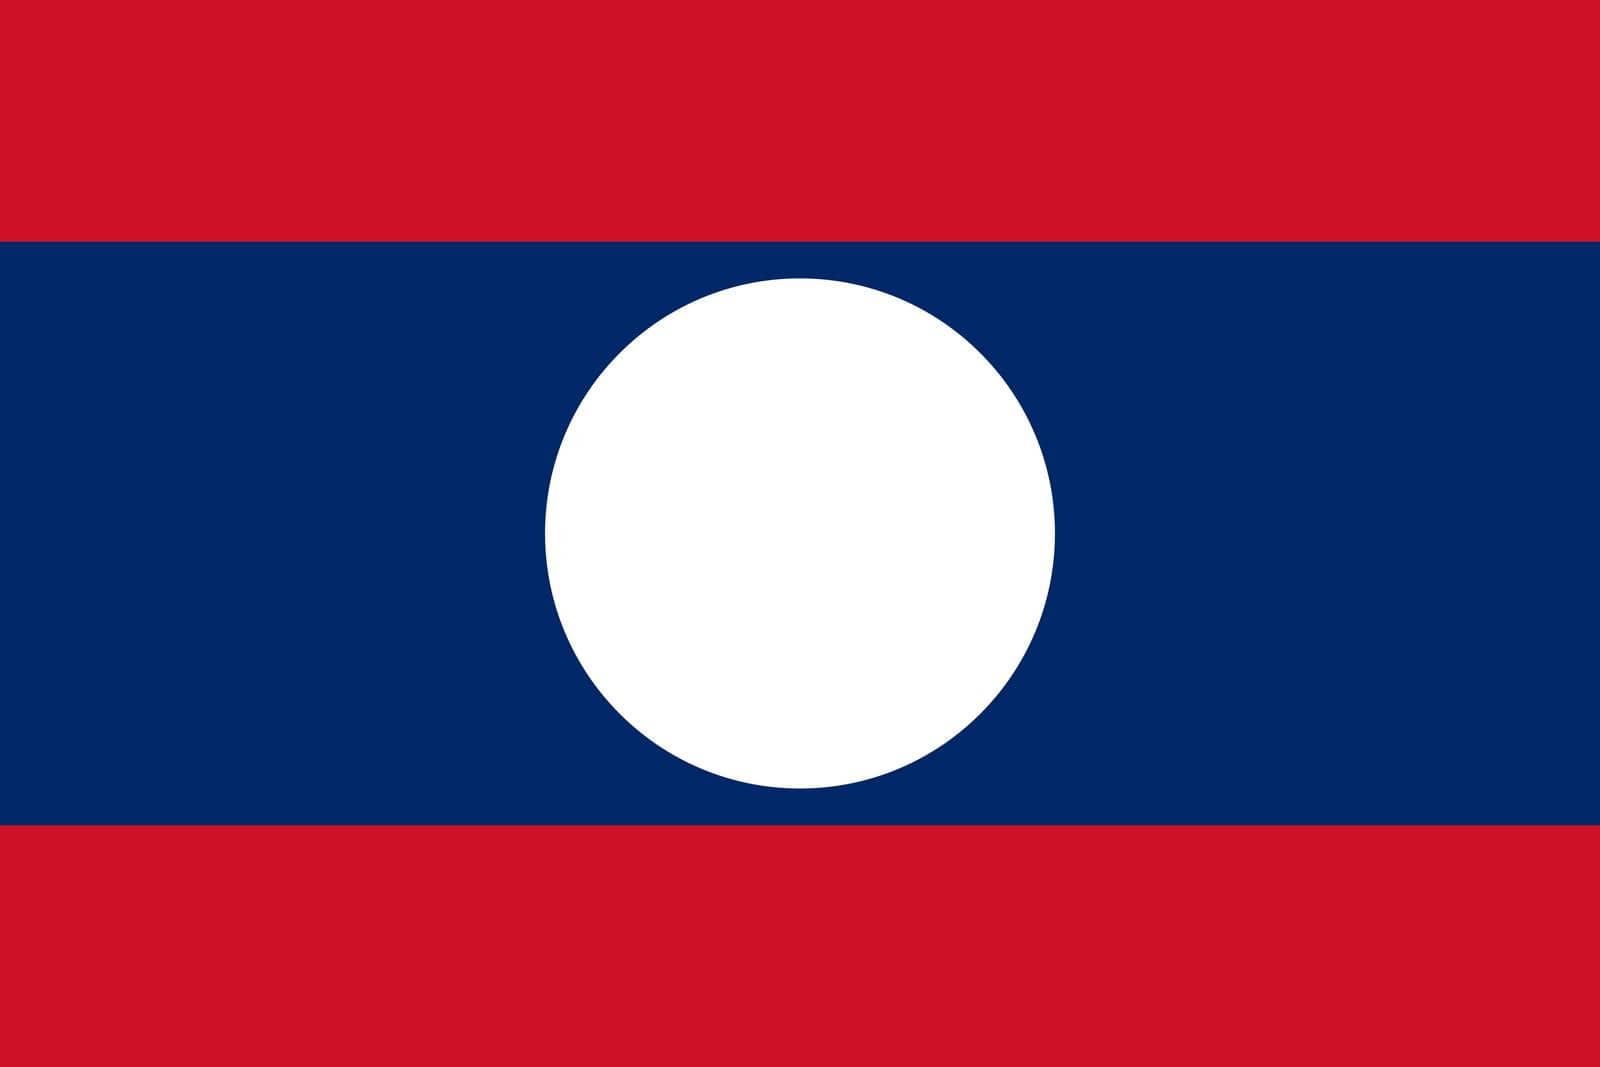 The flag of Laos vector icon. Laos symbol by AdamLapunik